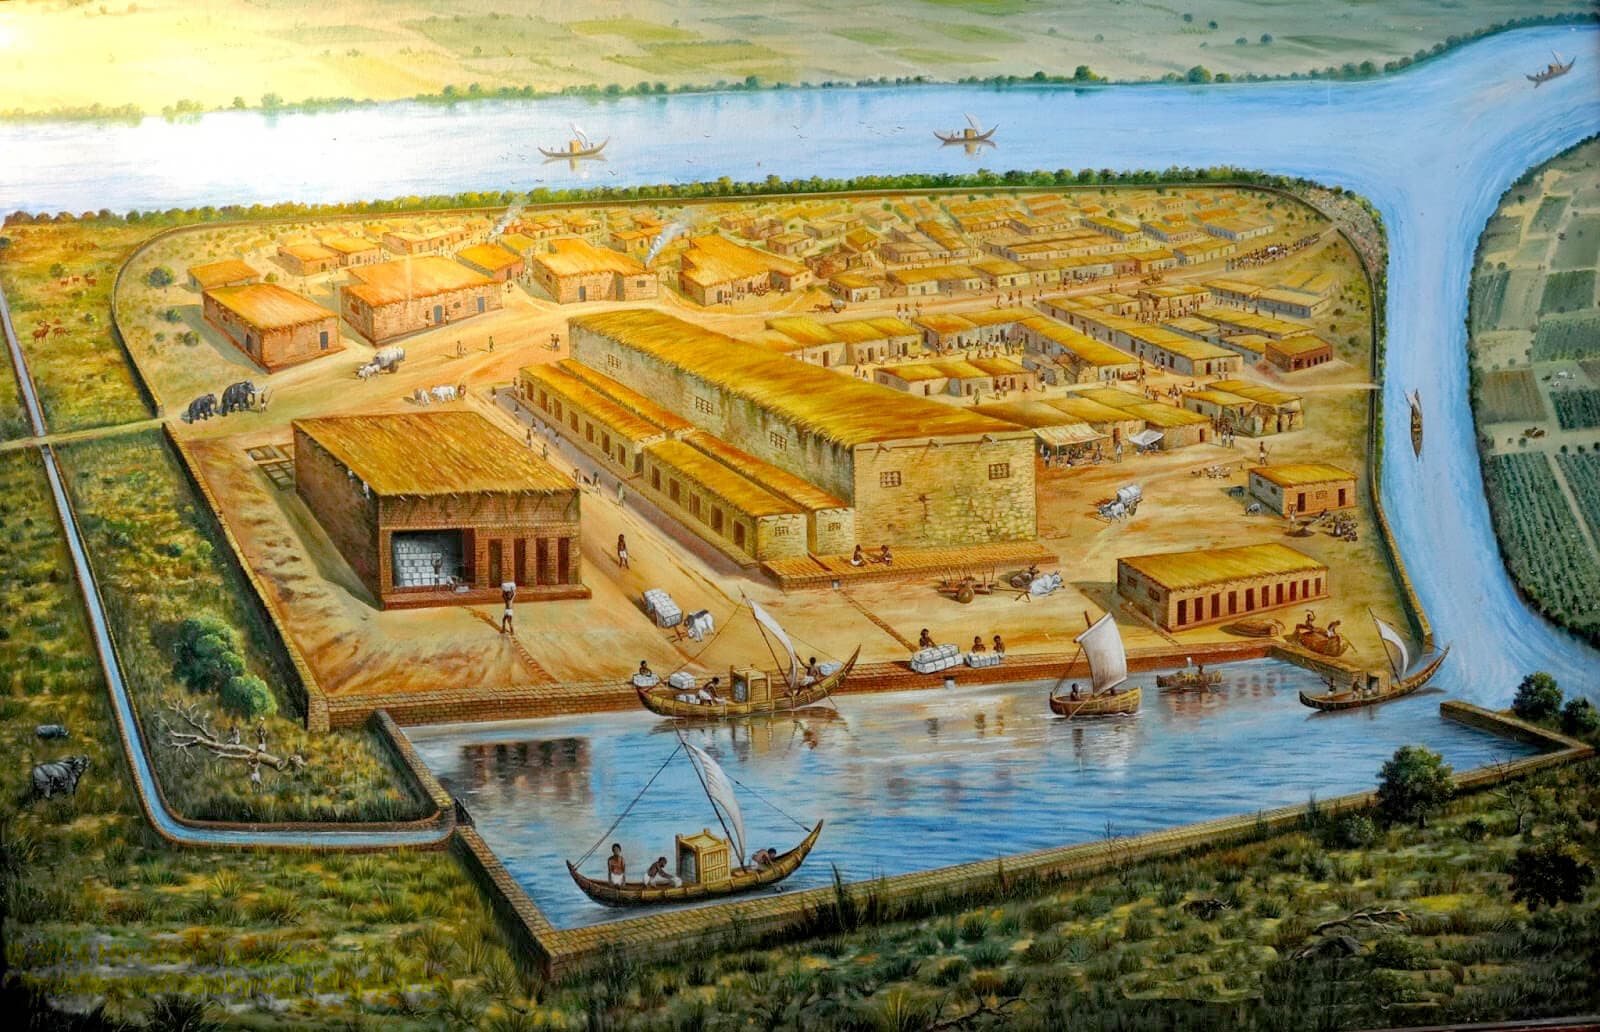 क्या लोथल एक वैदिक शहर था? वास्तु से साक्ष्य